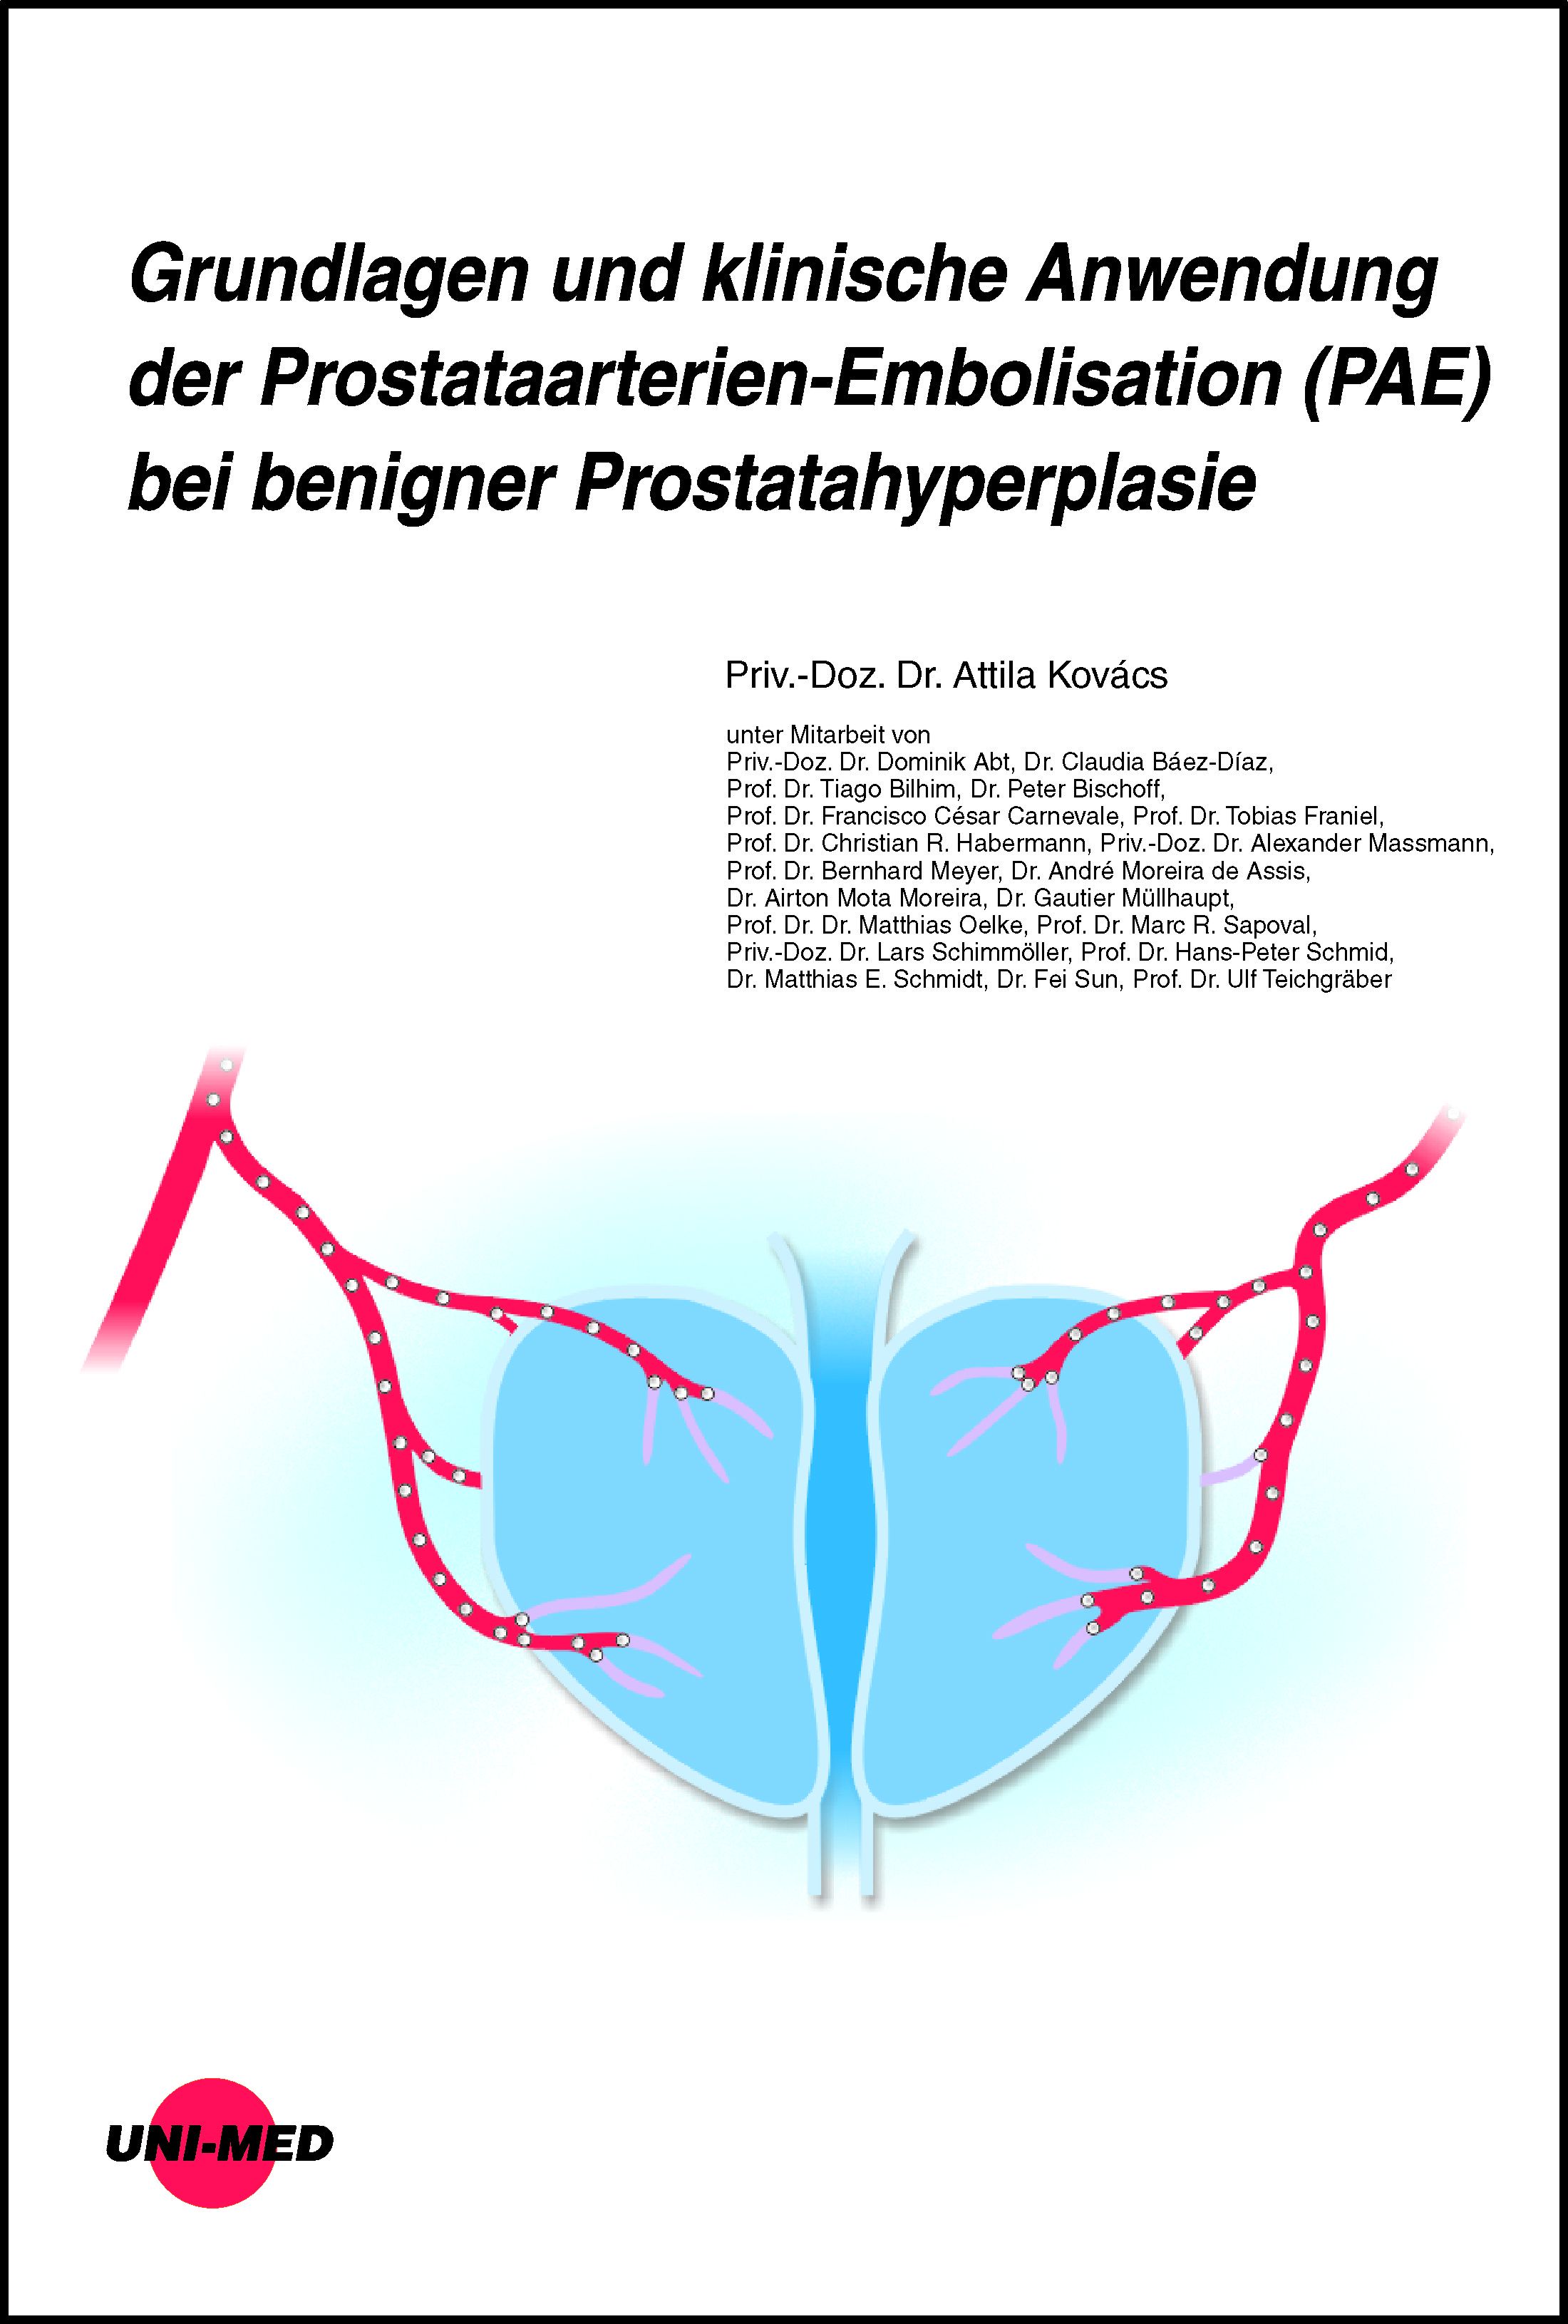 Grundlagen und klinische Anwendung der Prostataarterien-Embolisation (Pae) bei benigner